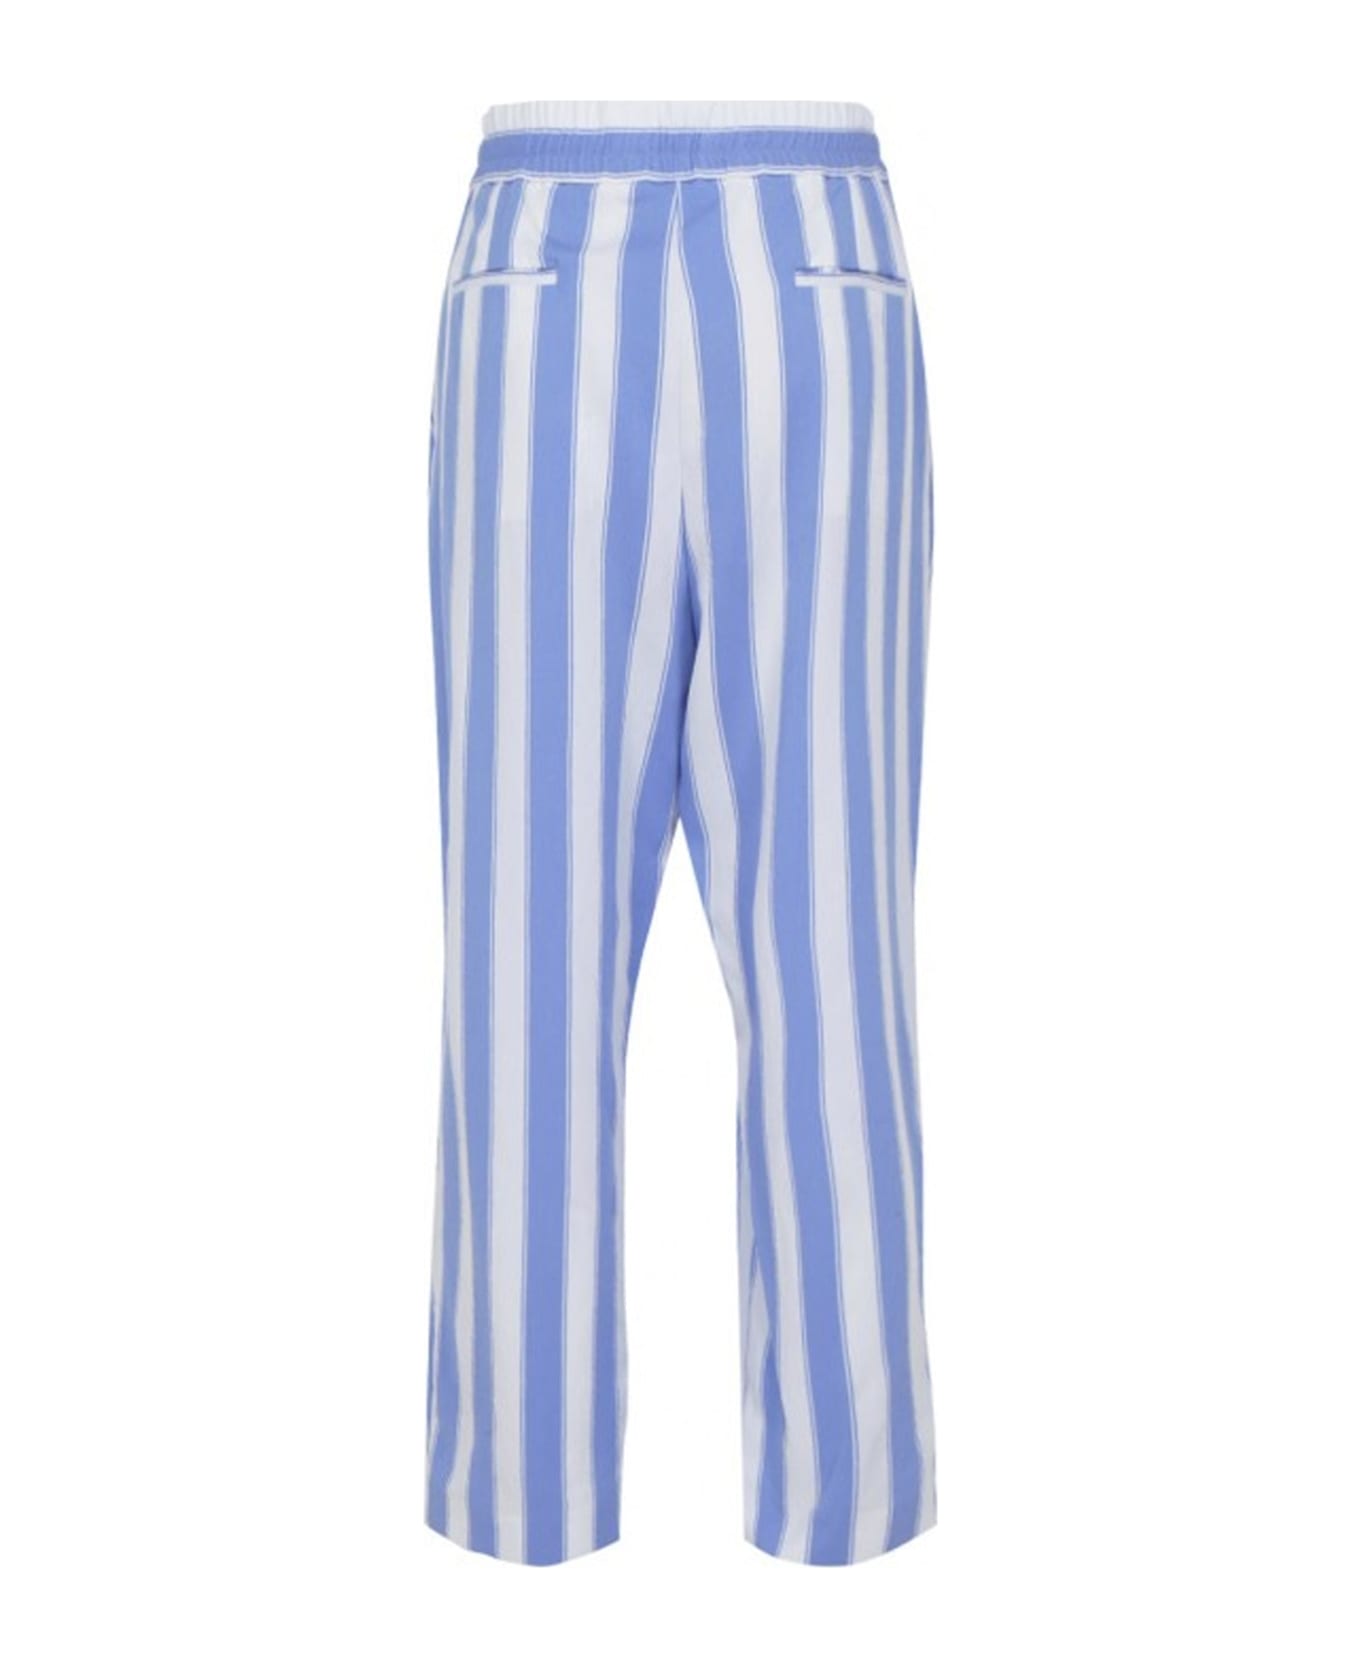 Balmain Striped Pants - Blue ボトムス